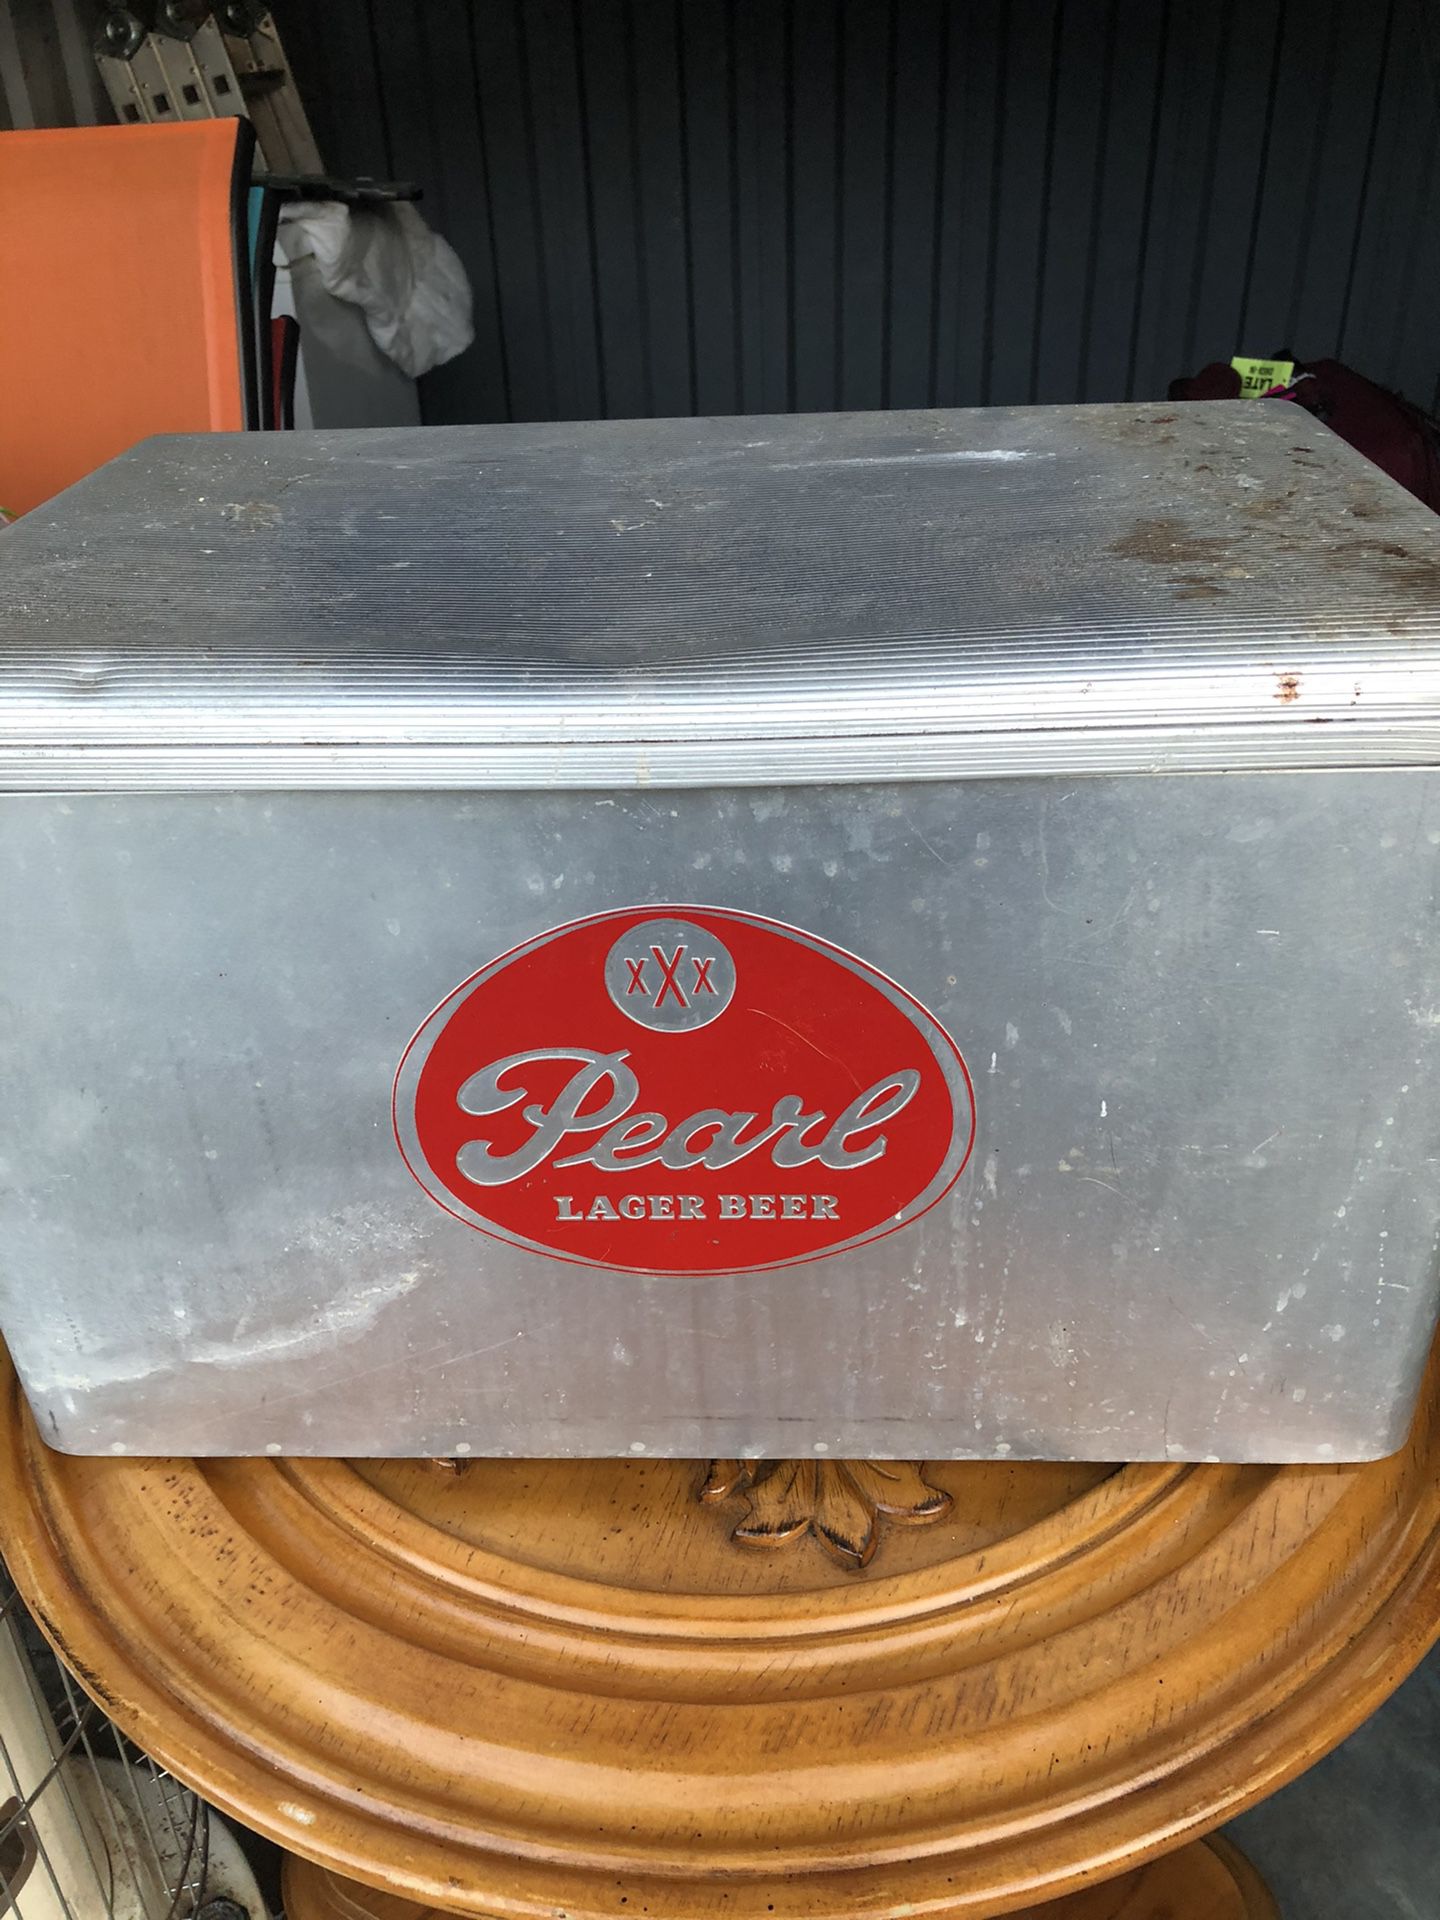 Vintage metal cooler...Pearl lager beer...